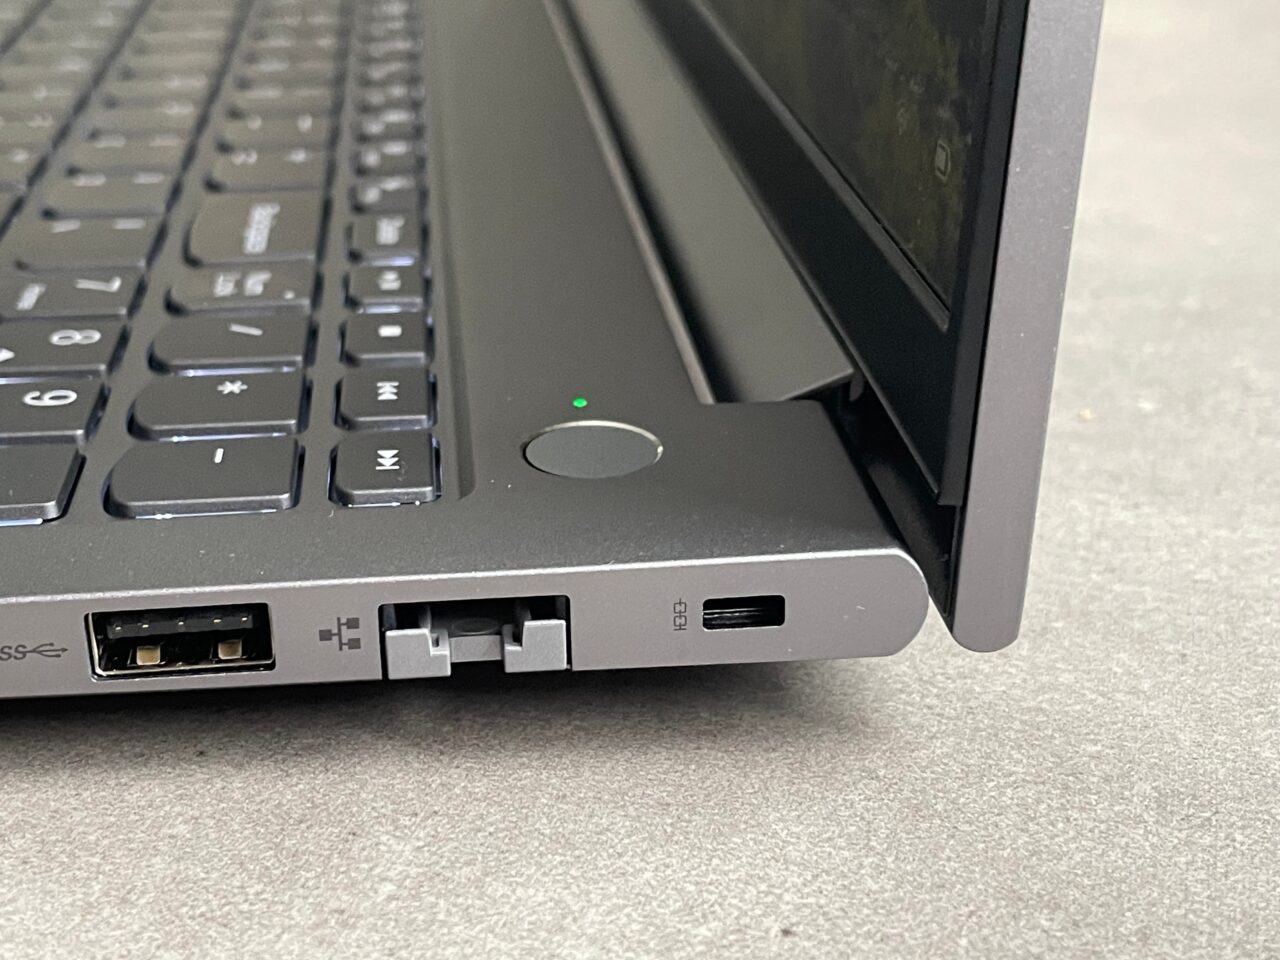 Część boczna laptopa z widocznymi portami USB, HDMI, złączem do dokowania i wskaźnikiem zasilania.